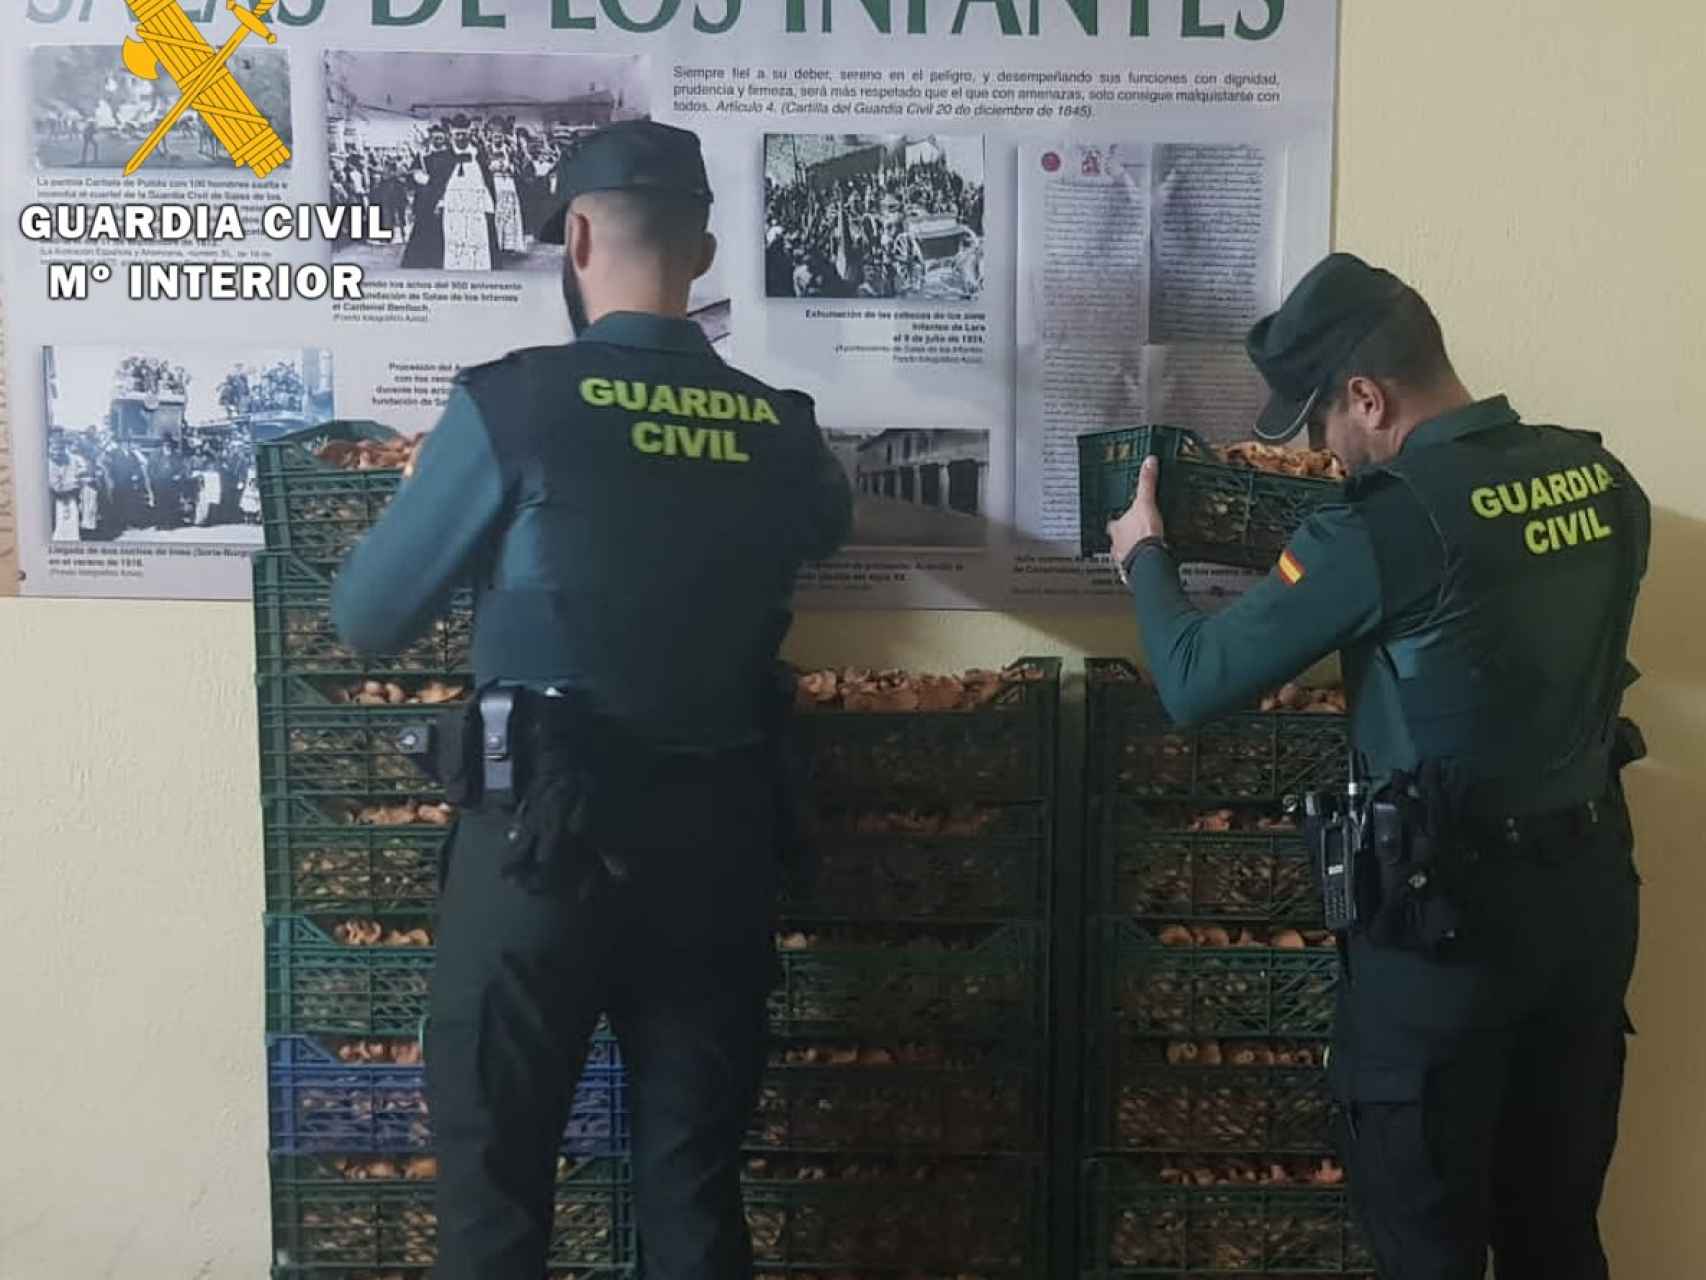 La Guardia Civil interviene 180 kilogramos de níscalos recogidos irregularmente en Salas de los Infantes